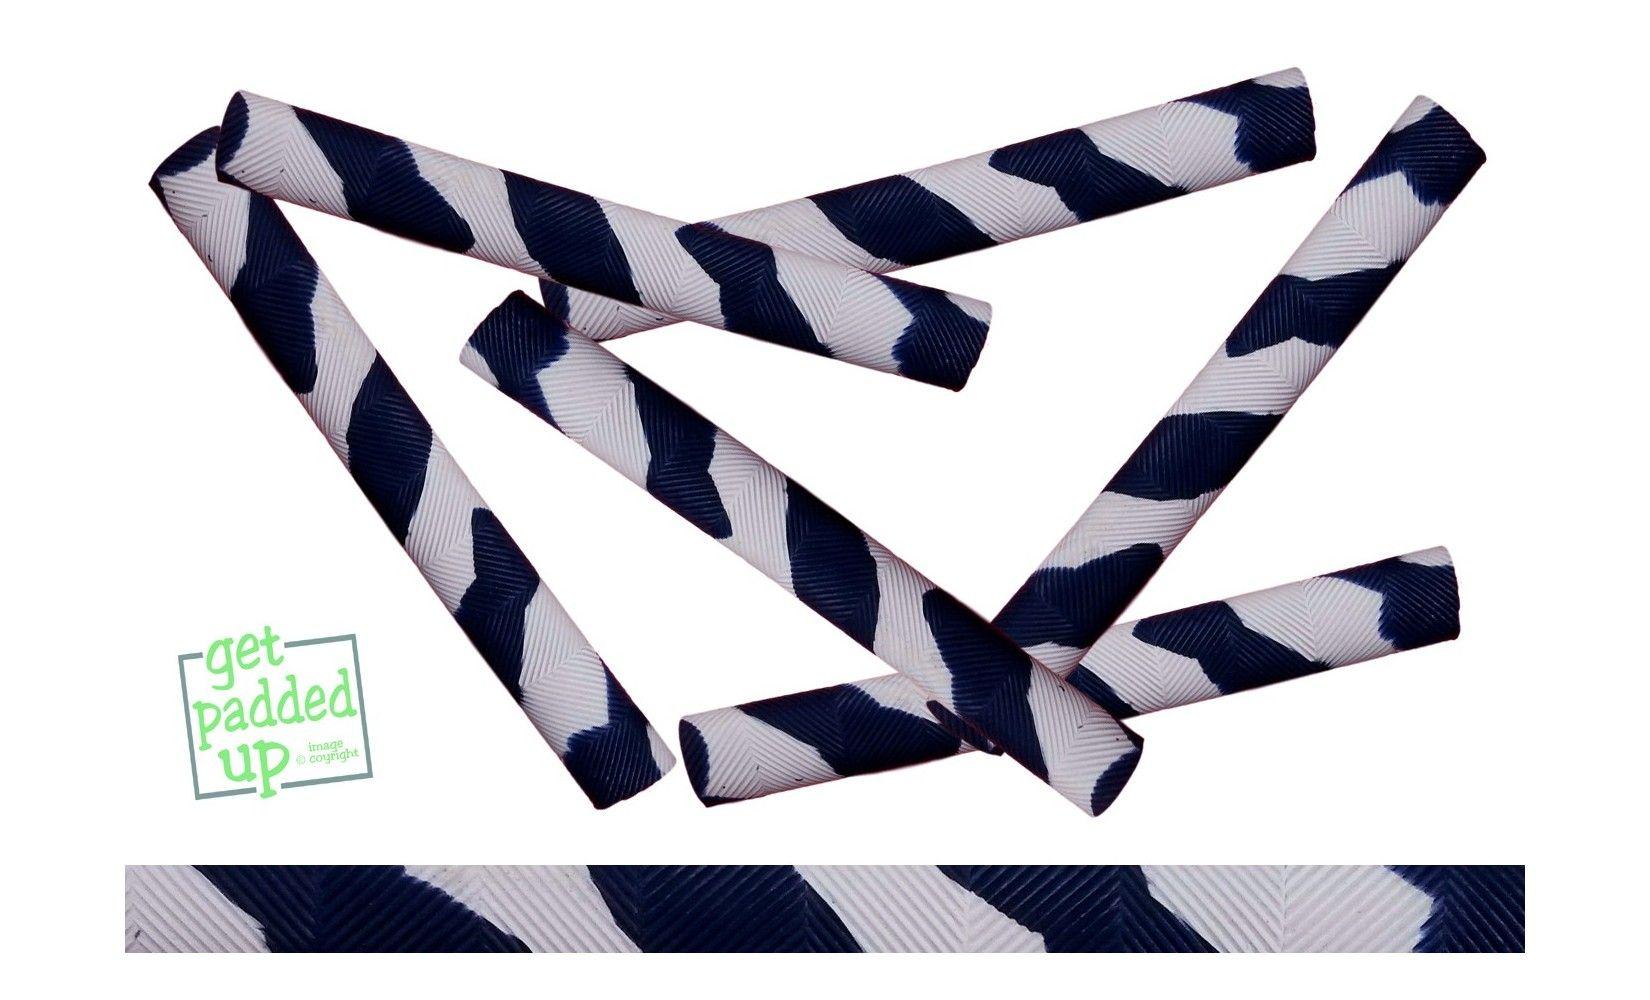 Navy Blue Spiral Logo - getpaddedup Chevron Cricket Bat Grip in Navy Blue and White